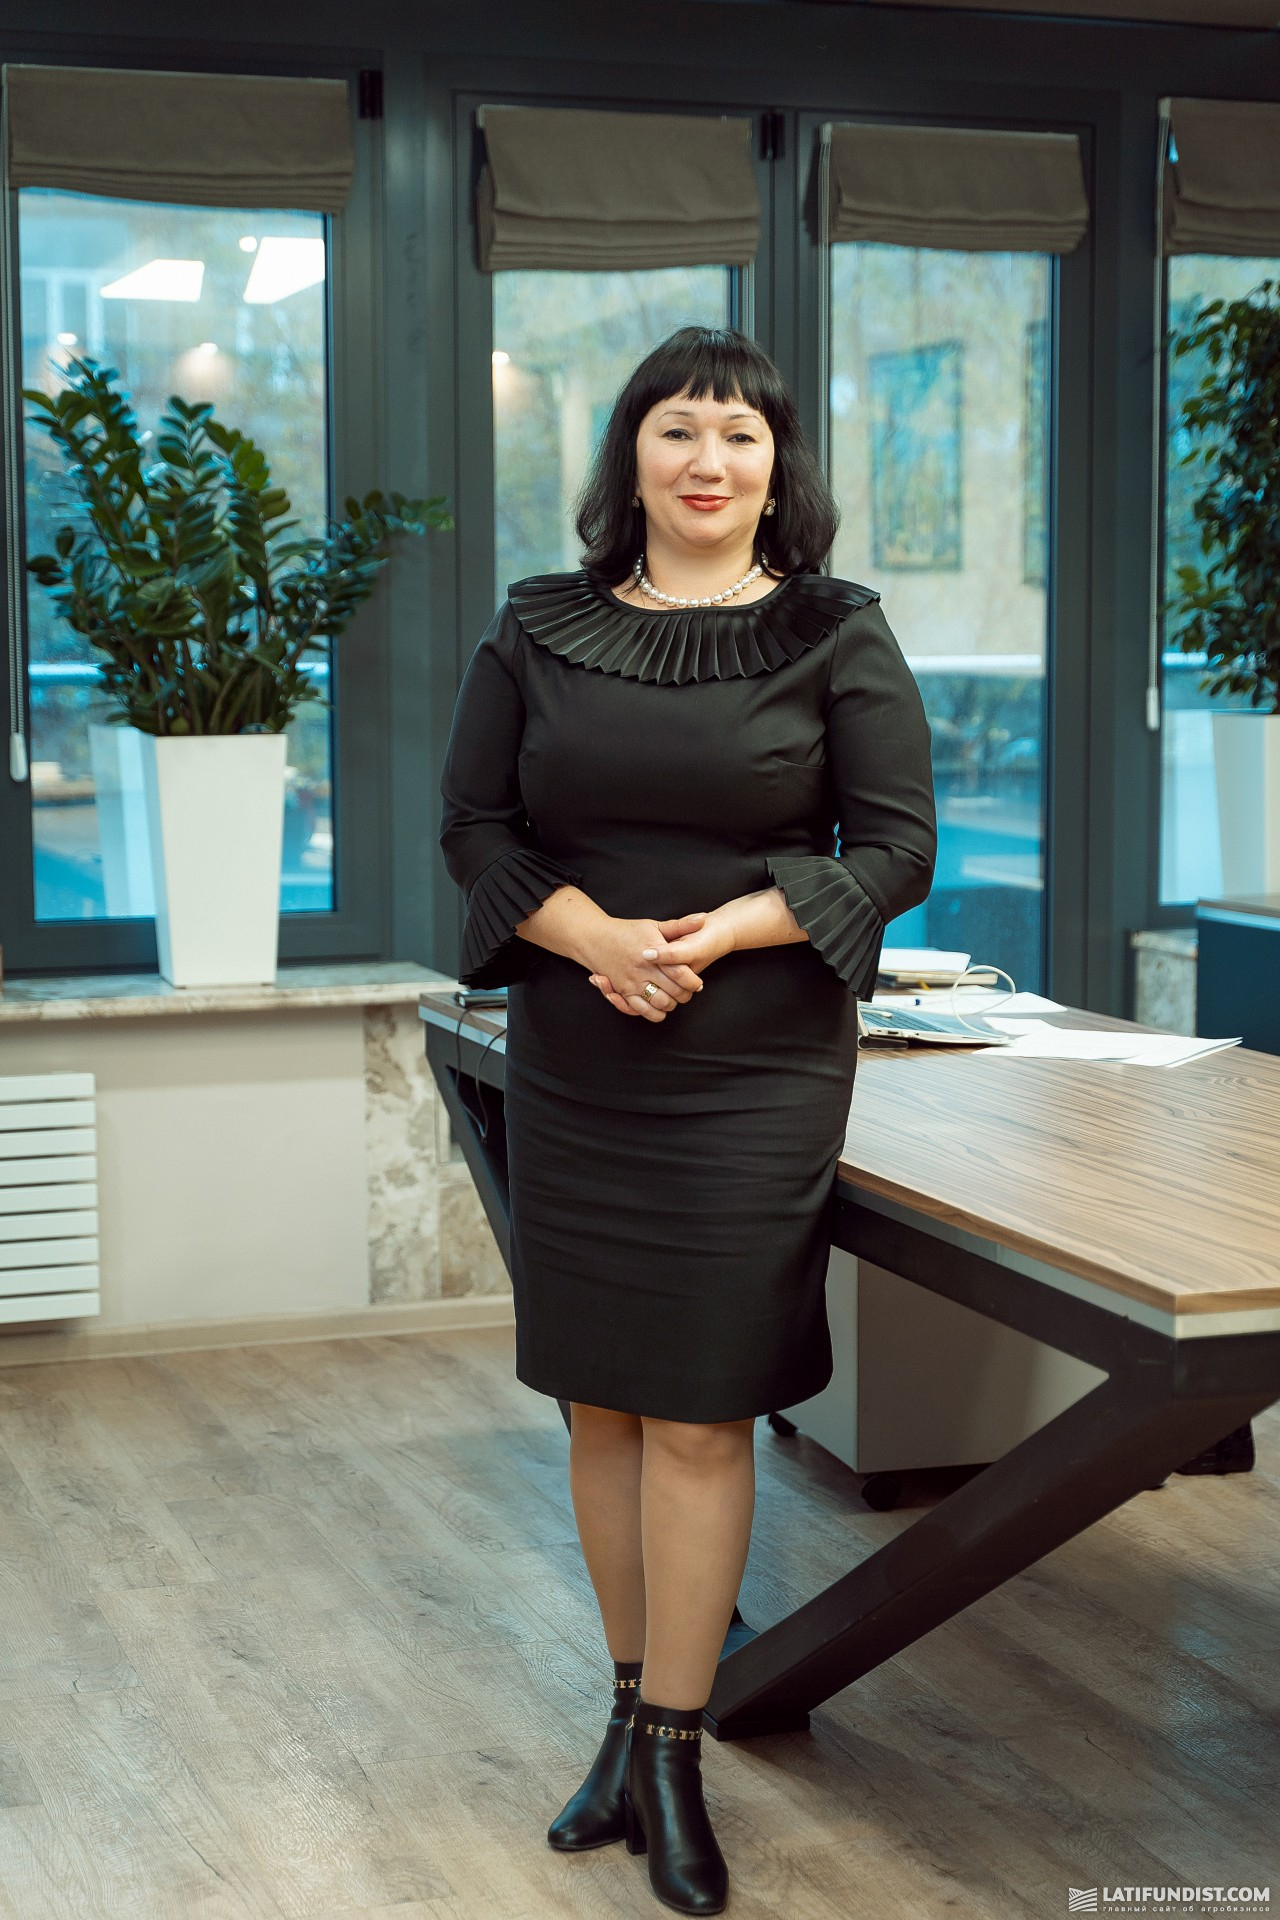 Лариса Бондарєва, заступниця голови правління «Райффайзен Банк»